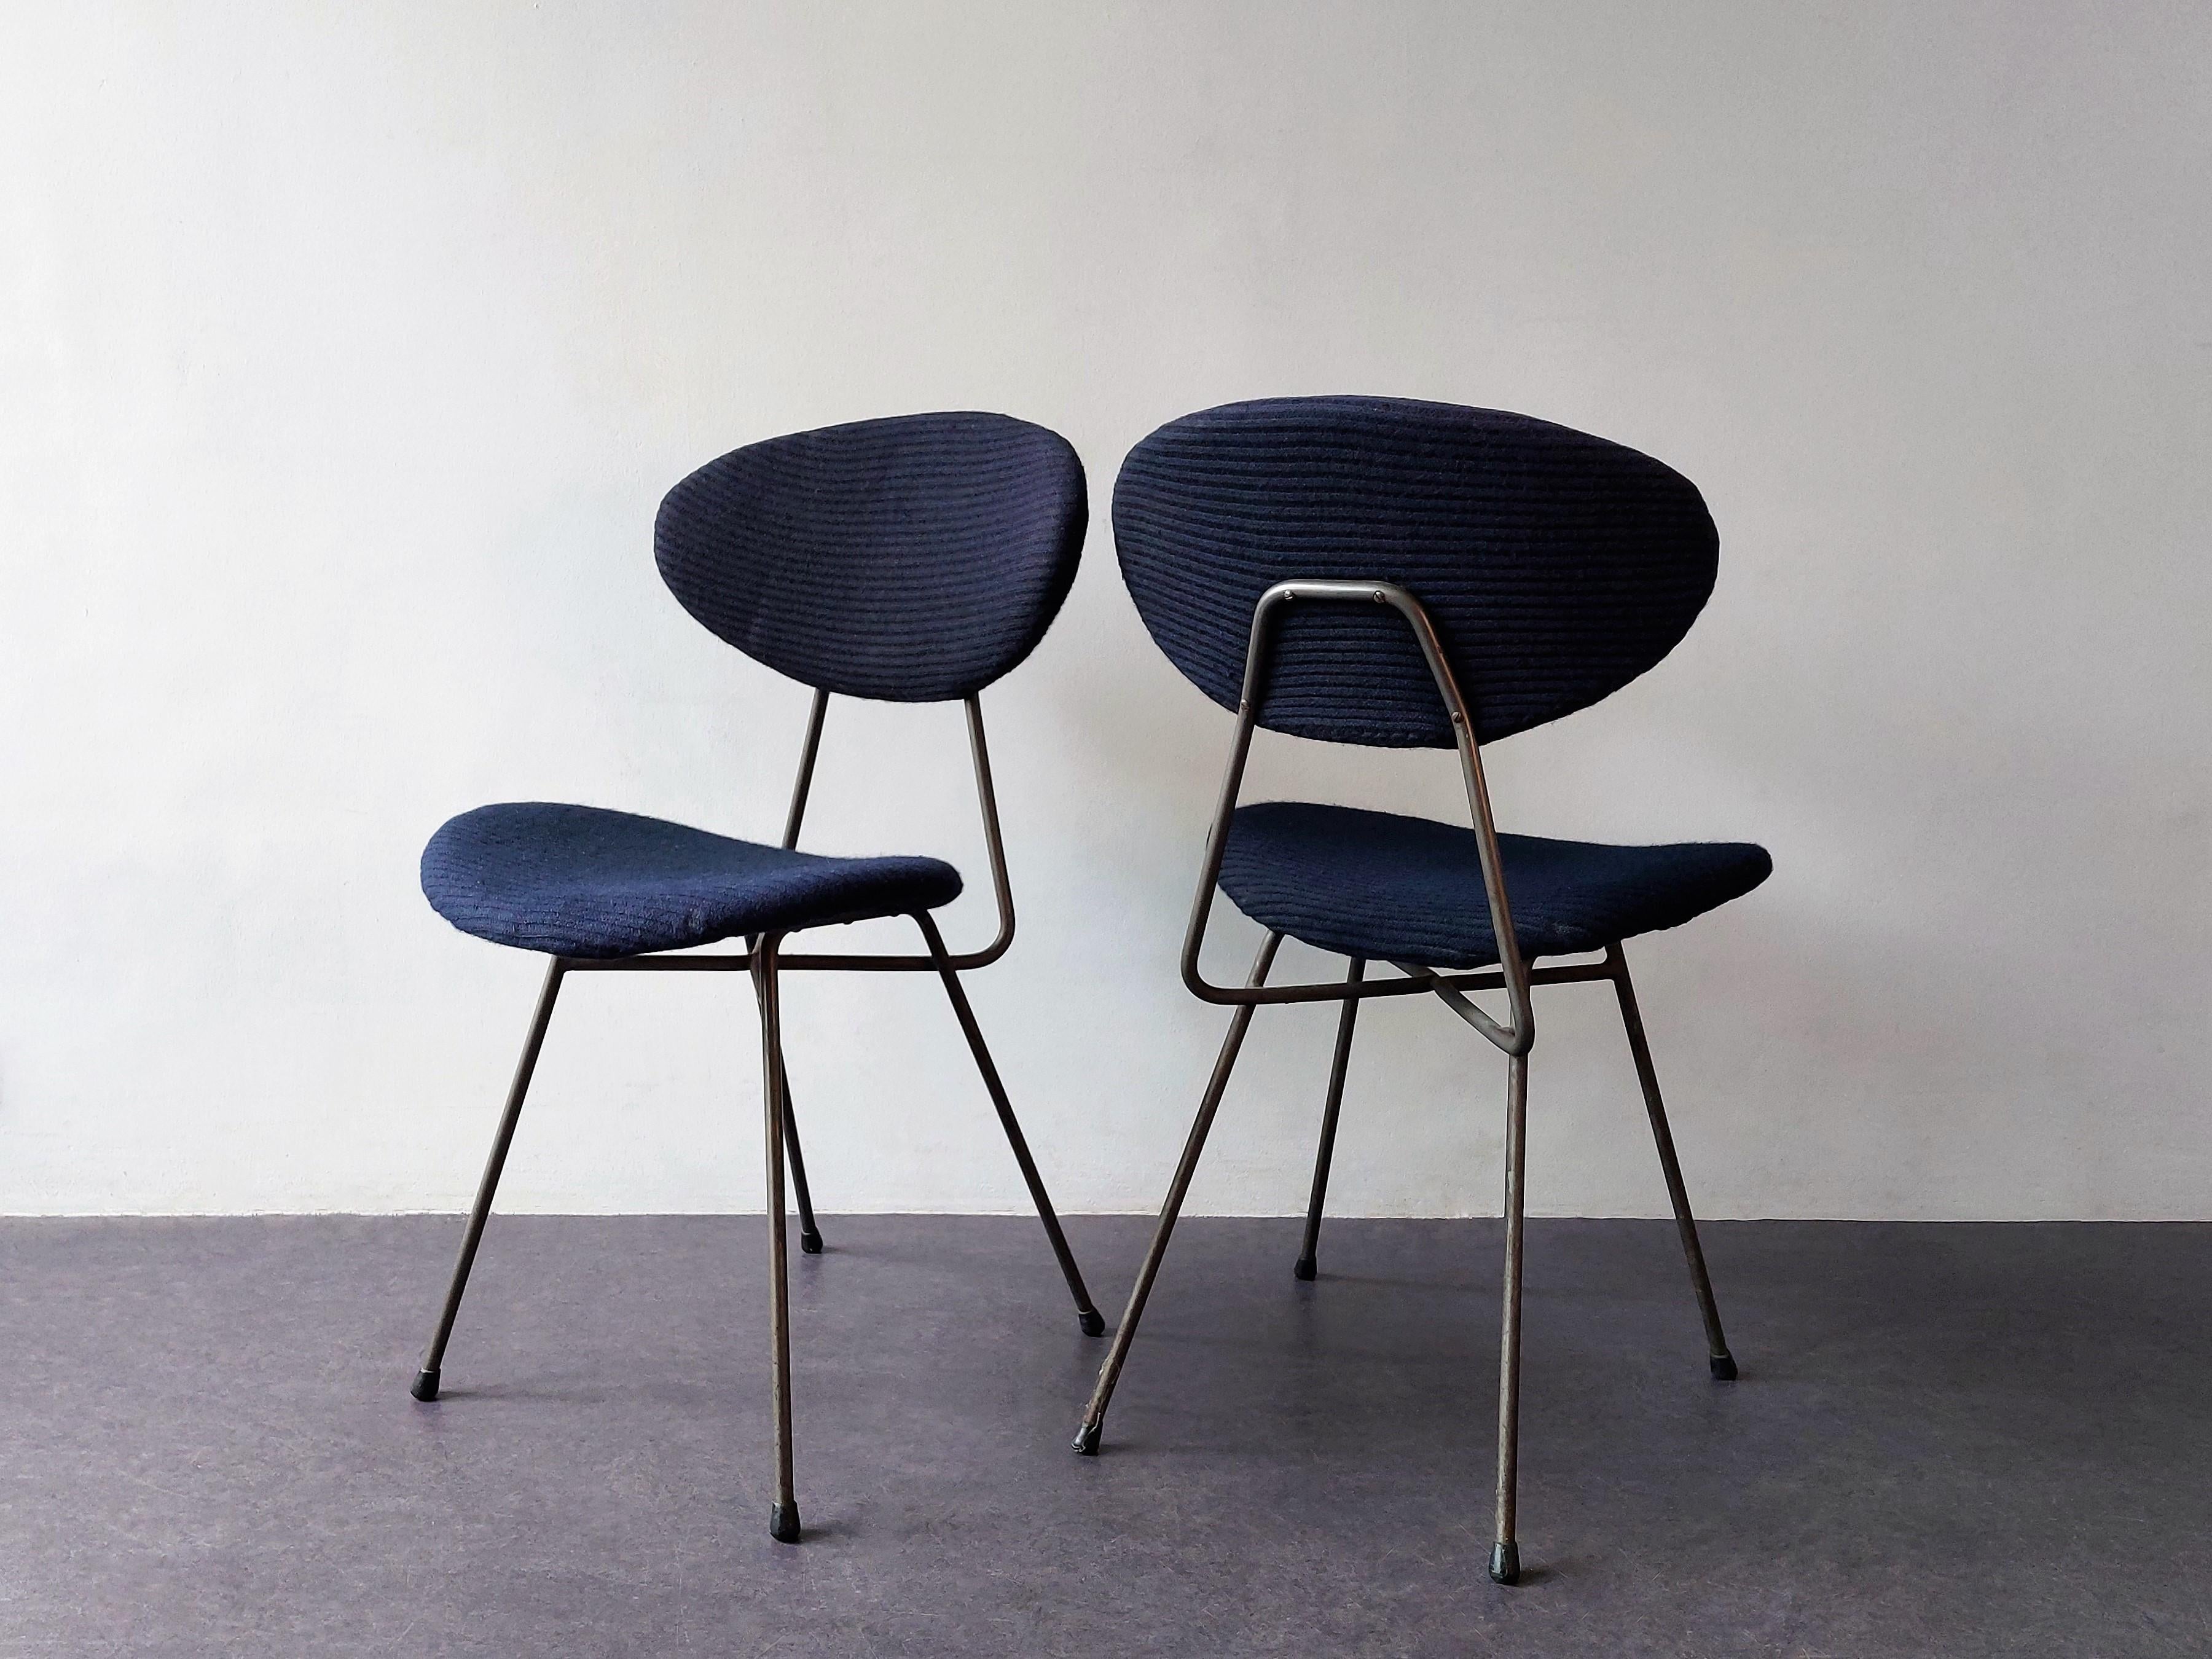 Der Stuhl 'Staatsmijnen' (übersetzt: Staatsminen) wurde 1955 von Rob Parry und Emile Truijen entworfen. Diese Stühle wurden damals nur für das neue Büro der staatlichen niederländischen Bergbaugesellschaft (heute DSM) hergestellt. Wir haben ein Set